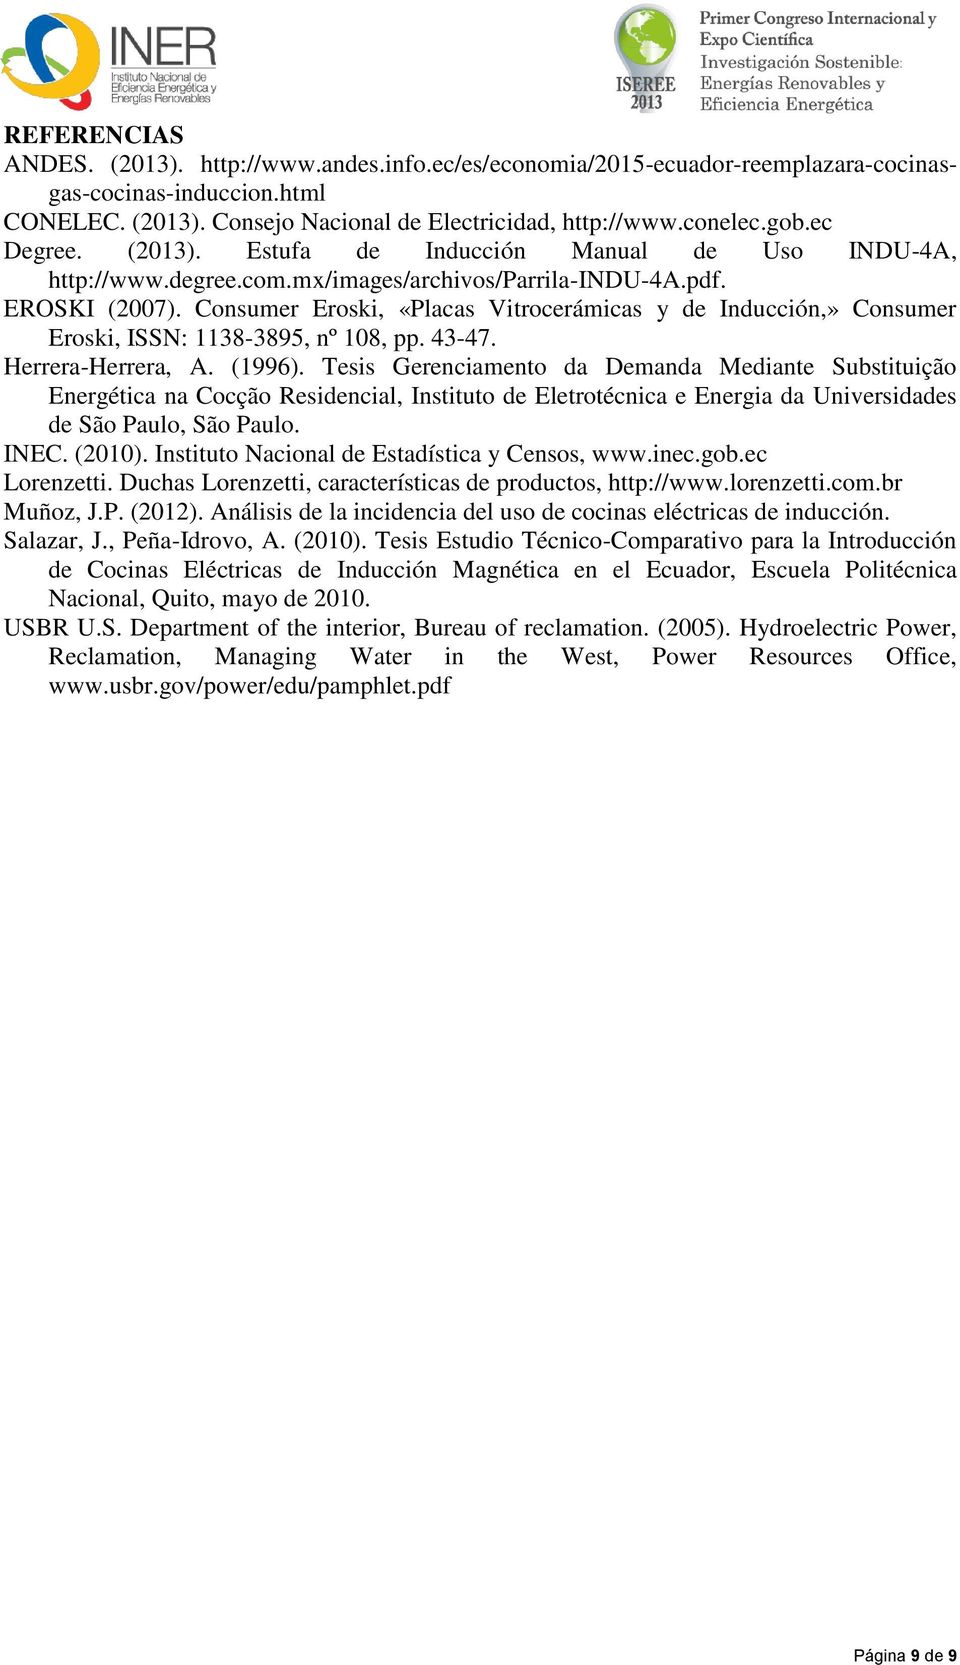 Consumer Eroski, «Placas Vitrocerámicas y de Inducción,» Consumer Eroski, ISSN: 1138-3895, nº 108, pp. 43-47. Herrera-Herrera, A. (1996).